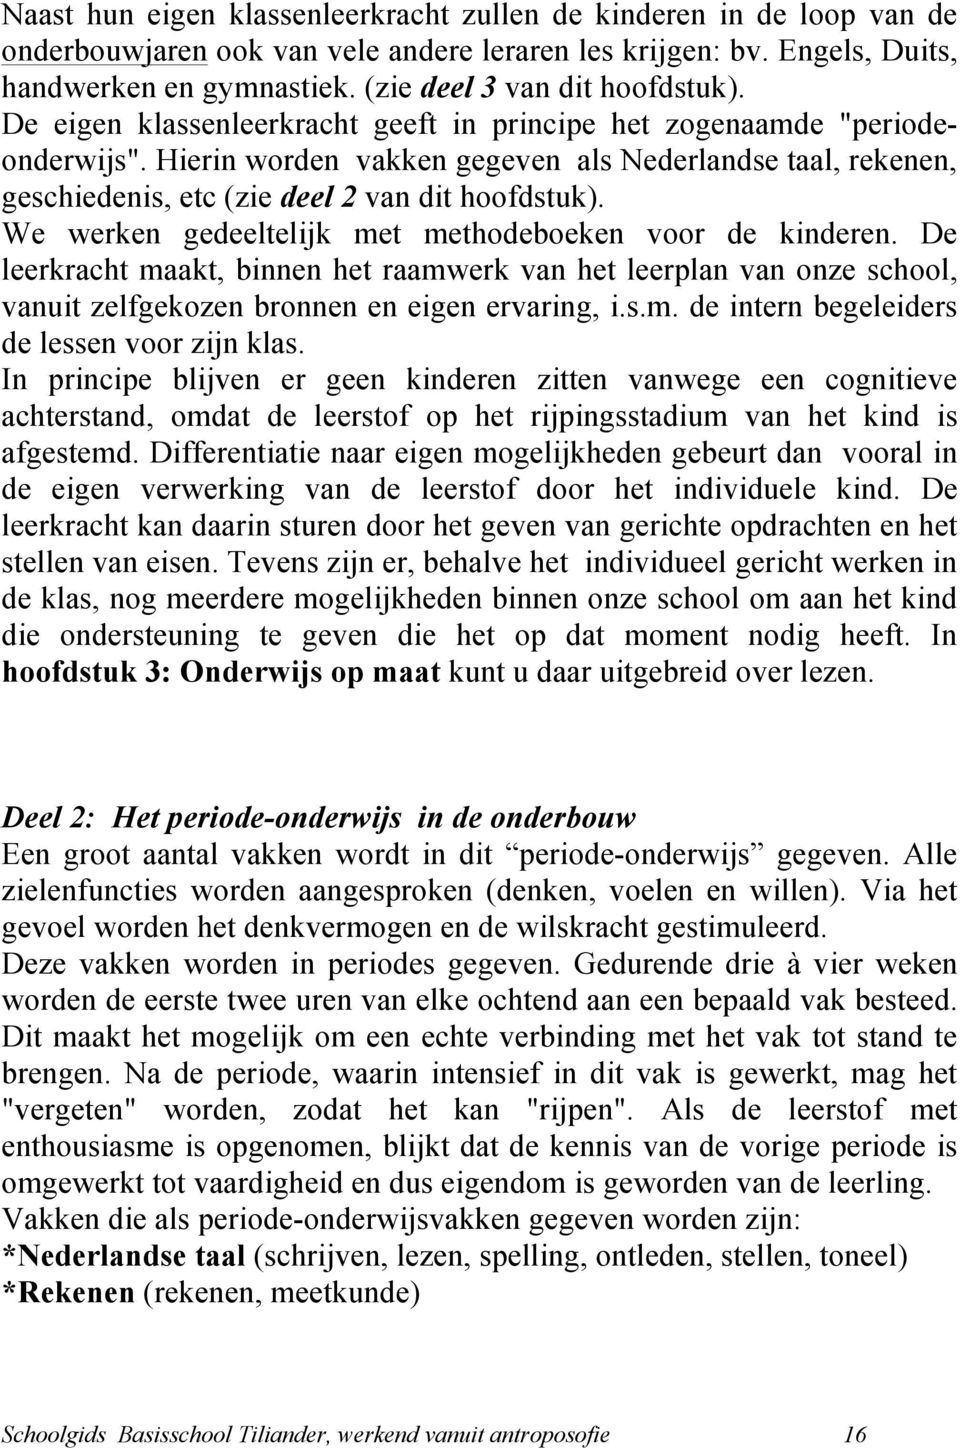 Hierin worden vakken gegeven als Nederlandse taal, rekenen, geschiedenis, etc (zie deel 2 van dit hoofdstuk). We werken gedeeltelijk met methodeboeken voor de kinderen.